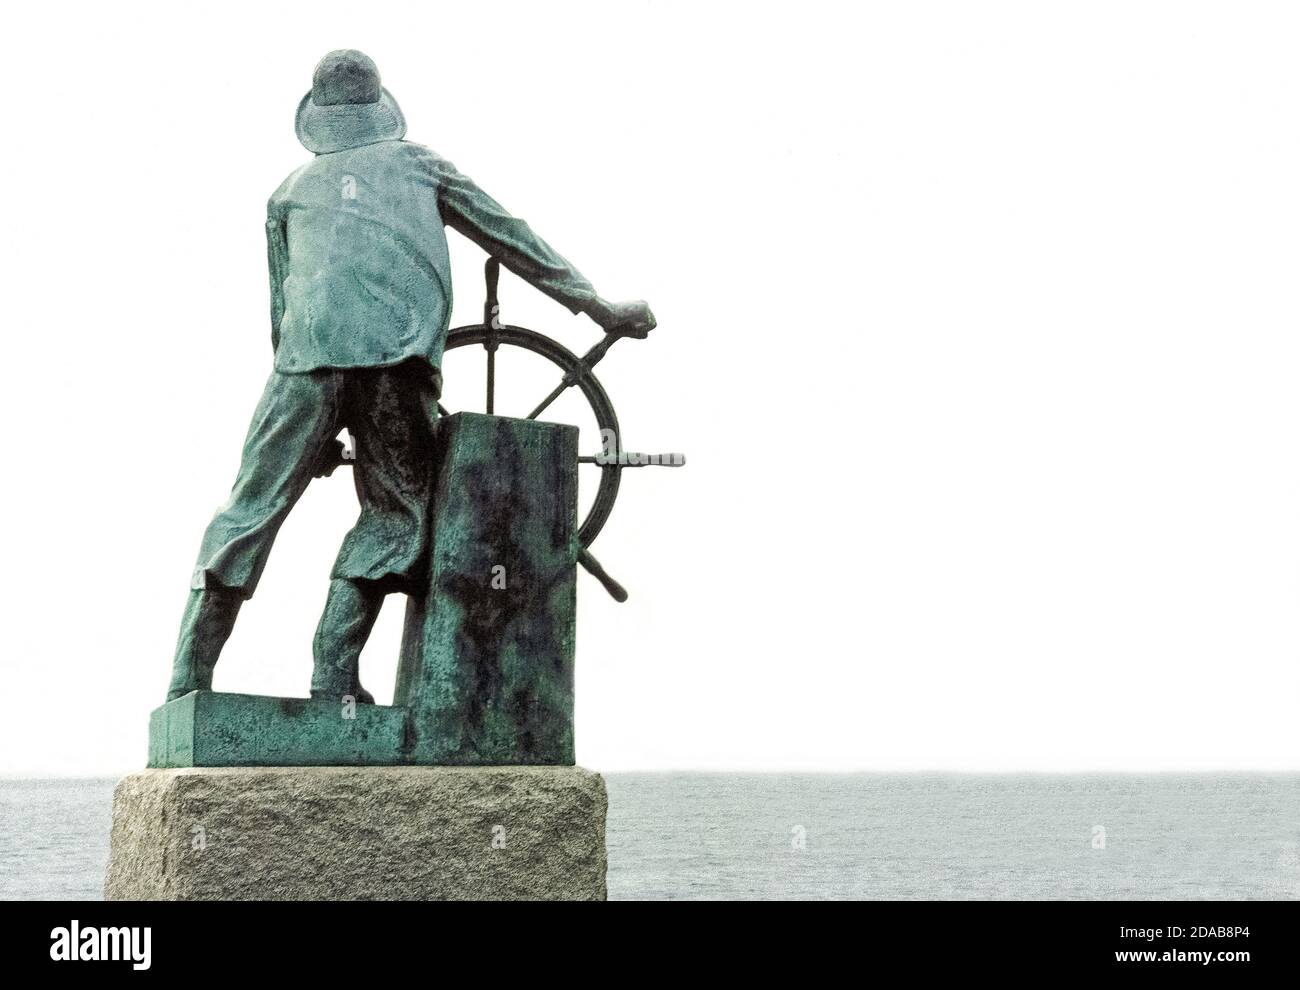 Questa statua di bronzo di un pescatore alla ruota di una nave guarda verso il porto di Gloucester, Massachusetts, USA, come monumento alle migliaia di pescatori persi in mare durante i primi tre secoli (1623-1923) della storia di quella città del New England. Tratto da un salmo biblico è la nota iscrizione del monumento: 'Quelli che scendono in mare a bordo di navi.' È scalpellato su un grande blocco di granito che contiene la statua alta 2.4 metri dello scultore inglese Leonard Craske. Questo famoso monumento è iscritto nel registro nazionale dei luoghi storici degli Stati Uniti. Foto Stock